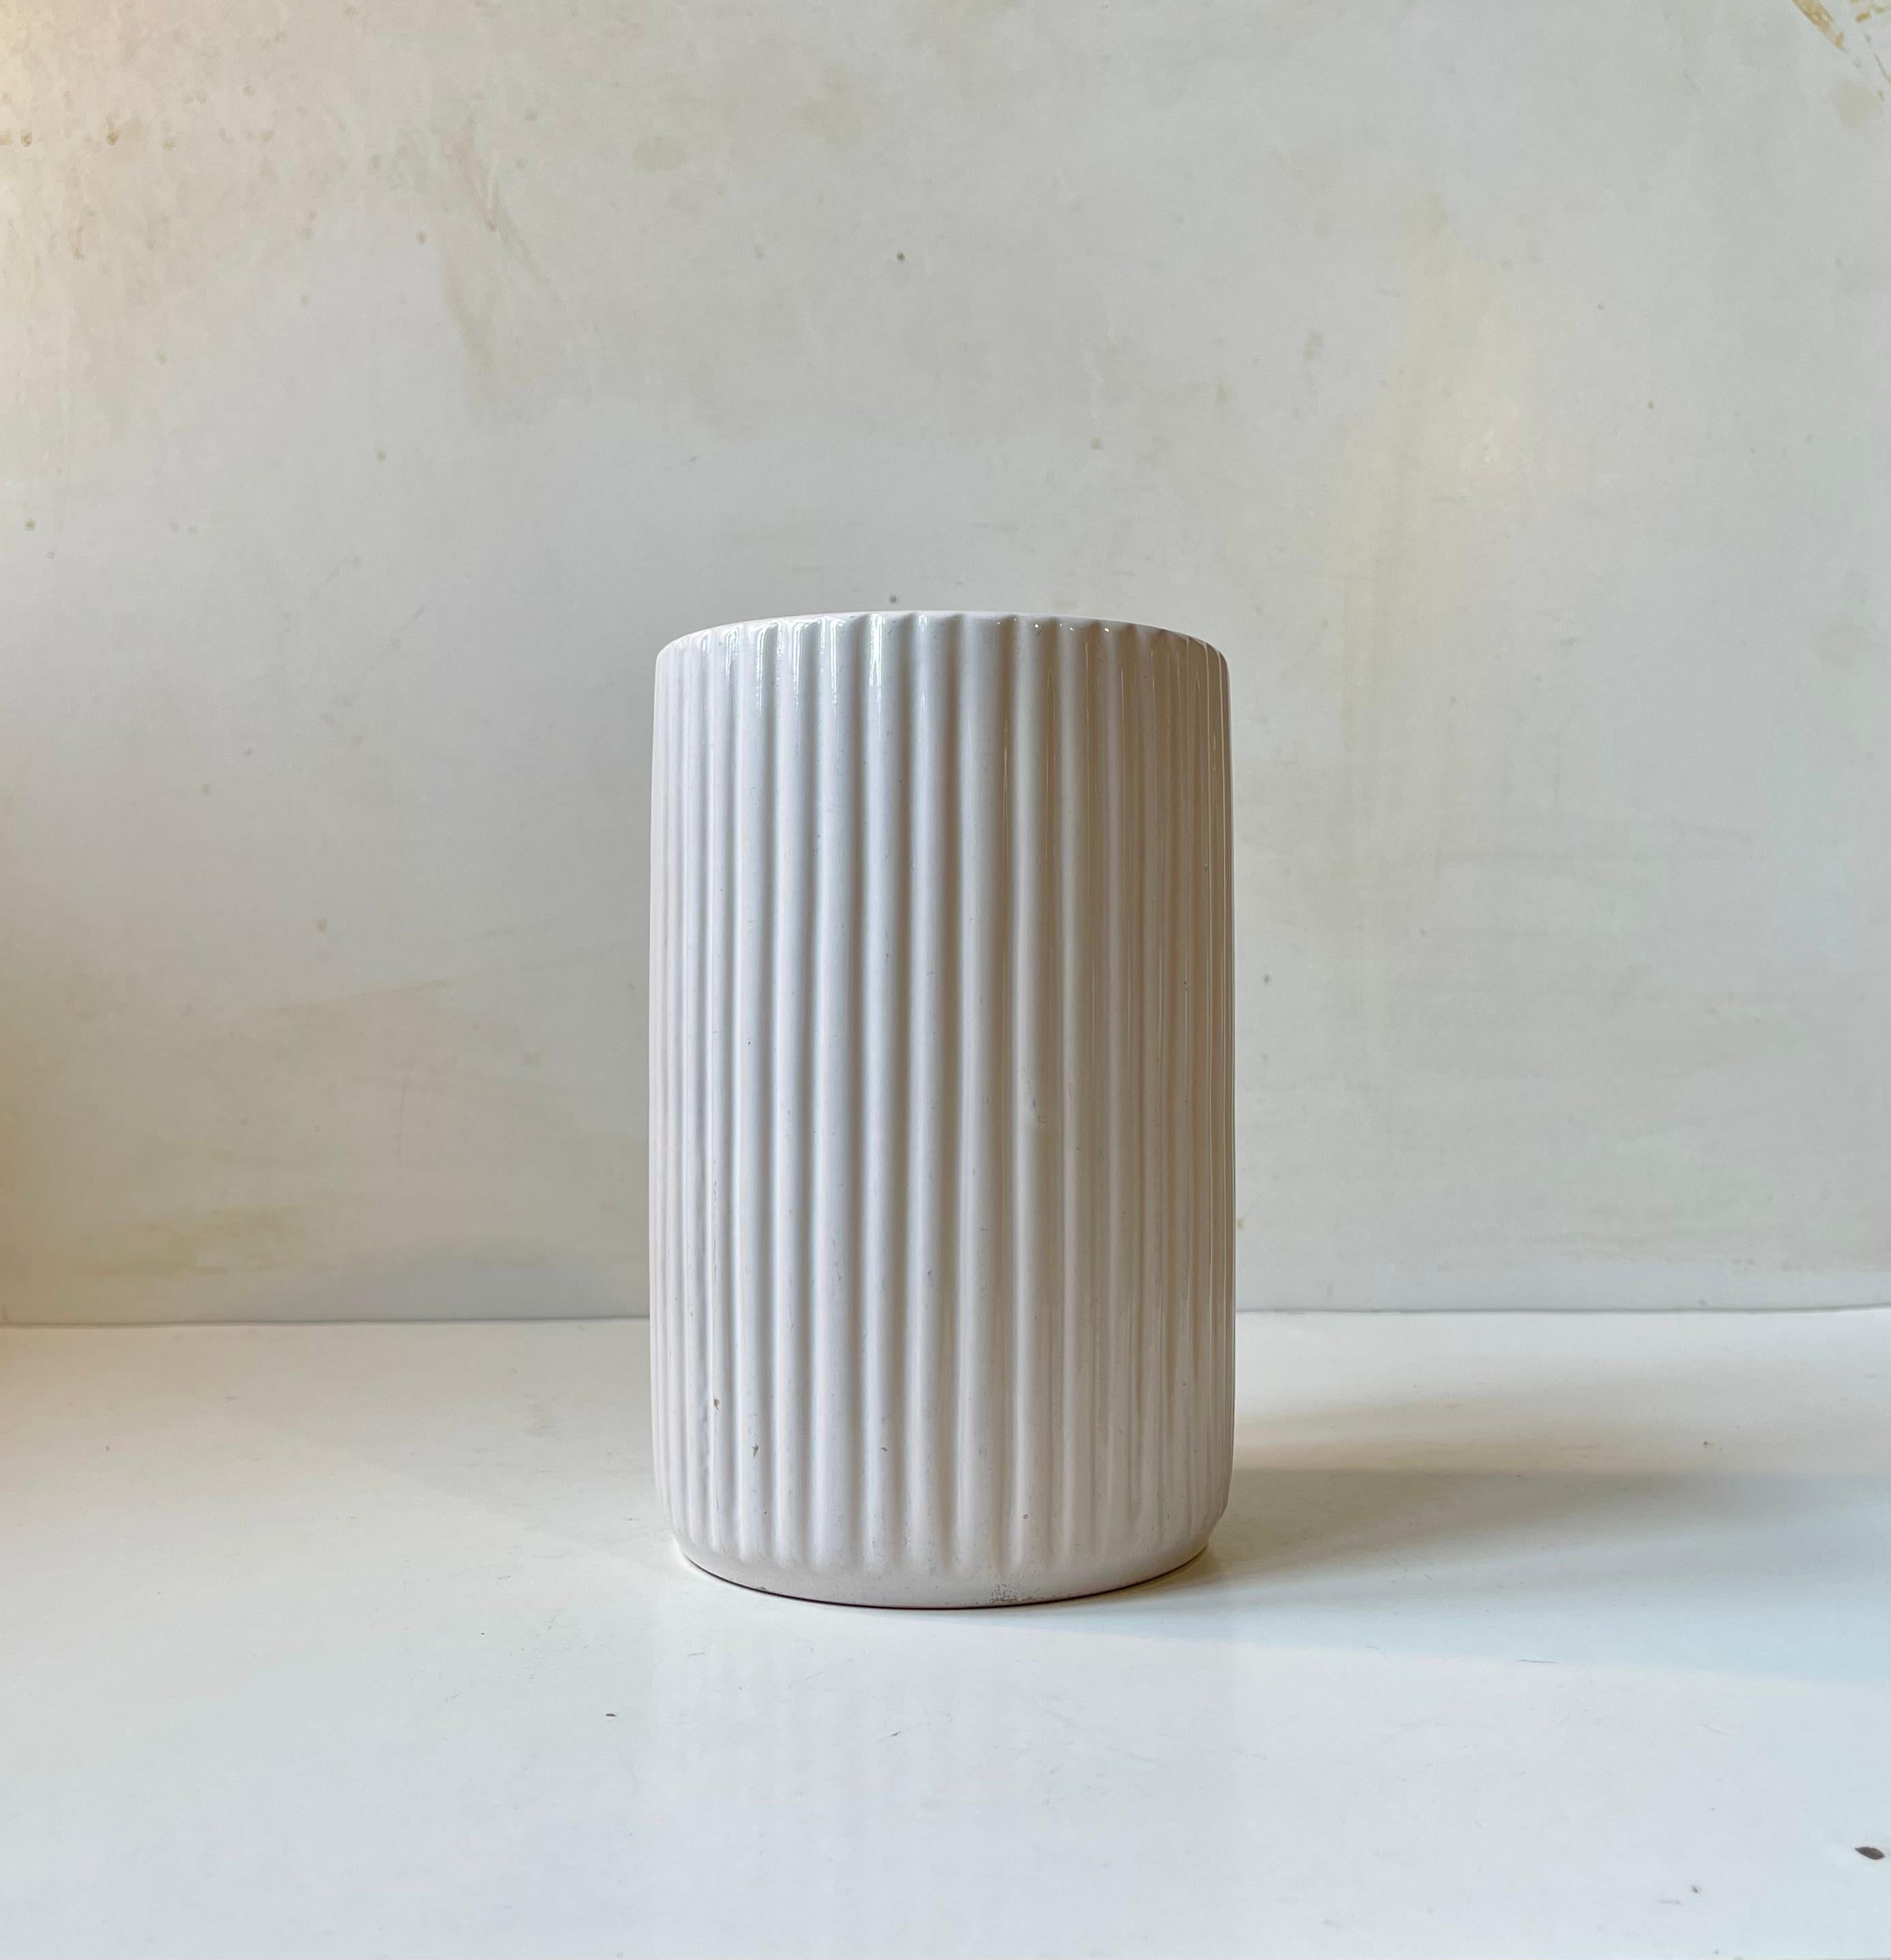 Große Vase mit vertikalen Rippen und weißer Glasur. Strenge architektonische Ableitung des Art-déco-Stils. Sehr ähnlich den ikonischen Lyngby-Vasen und Arne Bangs Formensprache. Dieser wurde jedoch in den 1940er Jahren von L. Hjorth auf der Insel